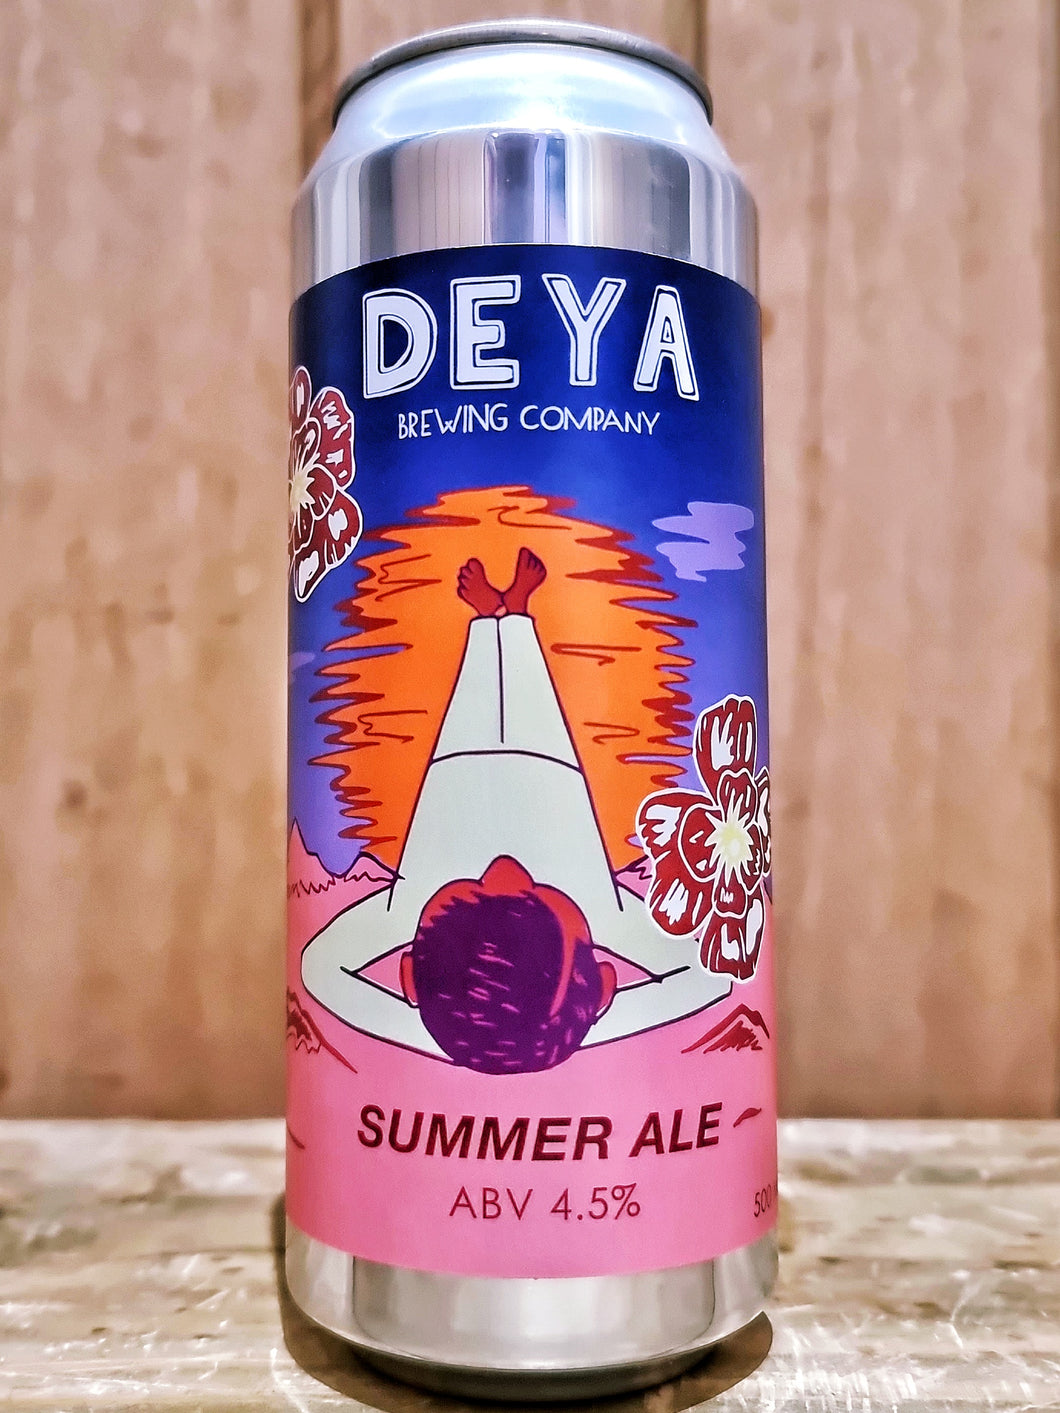 DEYA - Summer Ale Galaxy